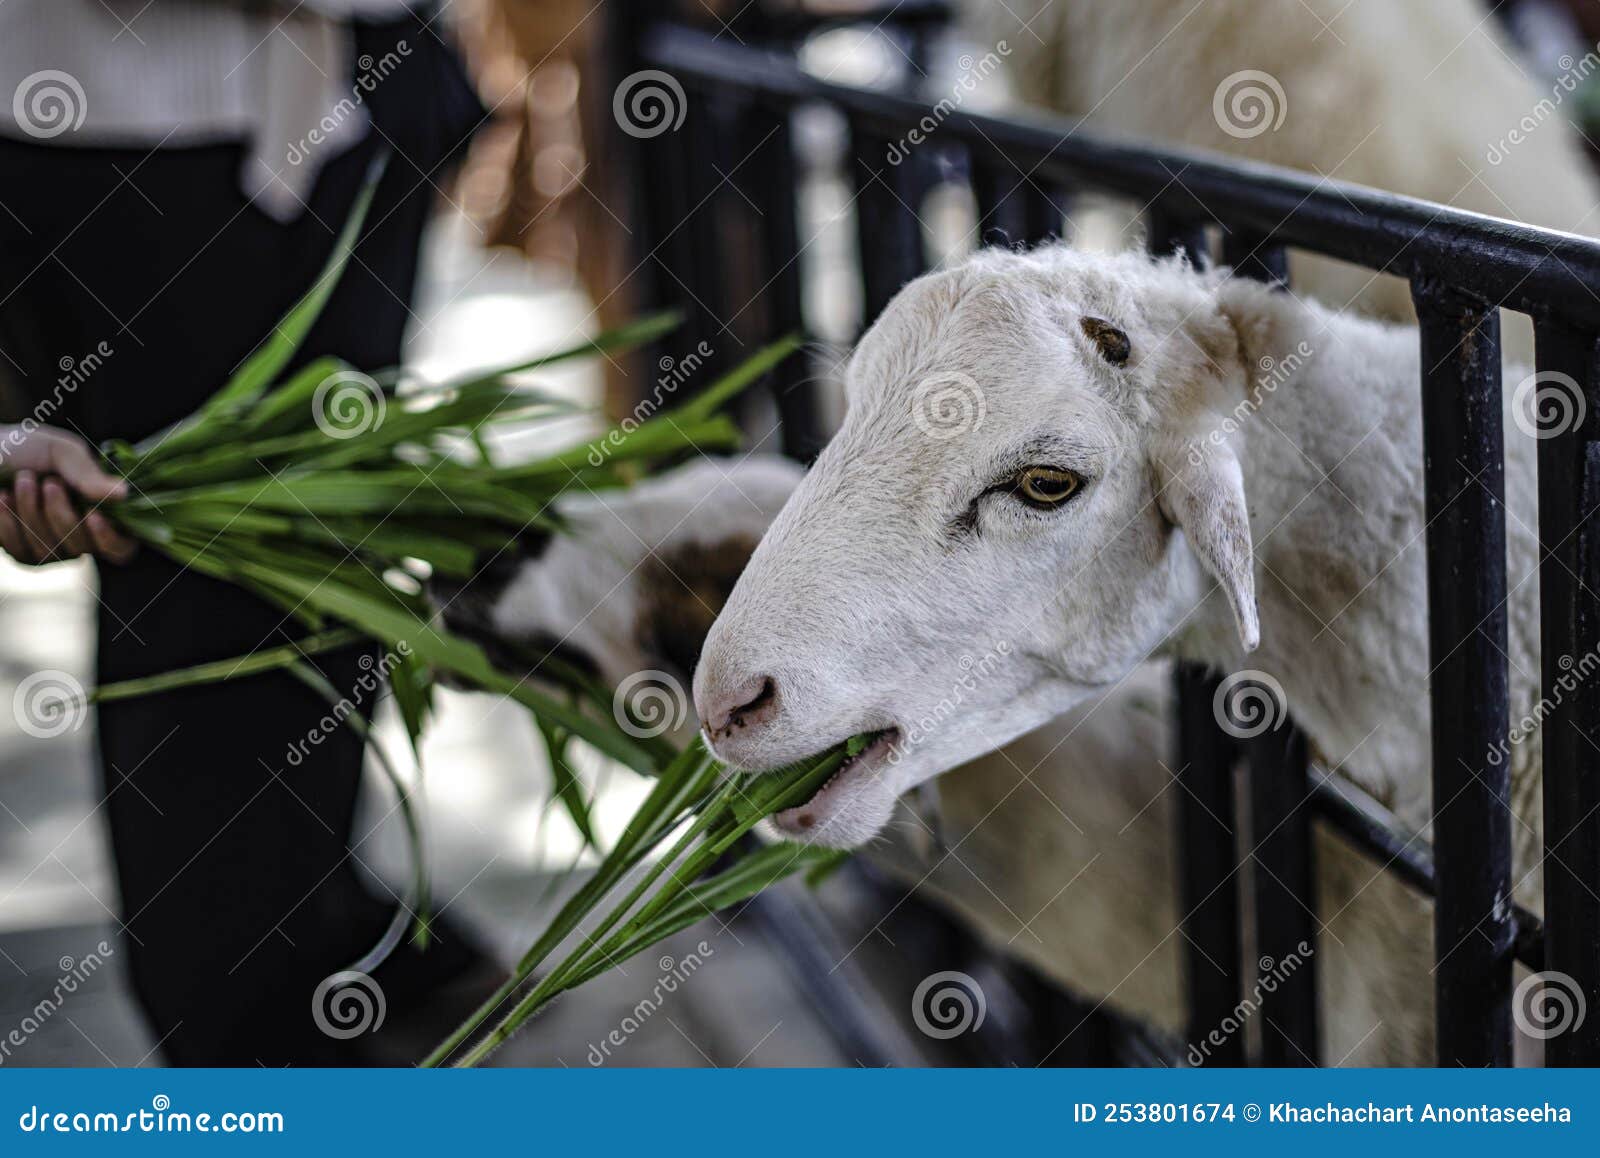 Touristes nourrissant de l'herbe de mouton dans une ferme